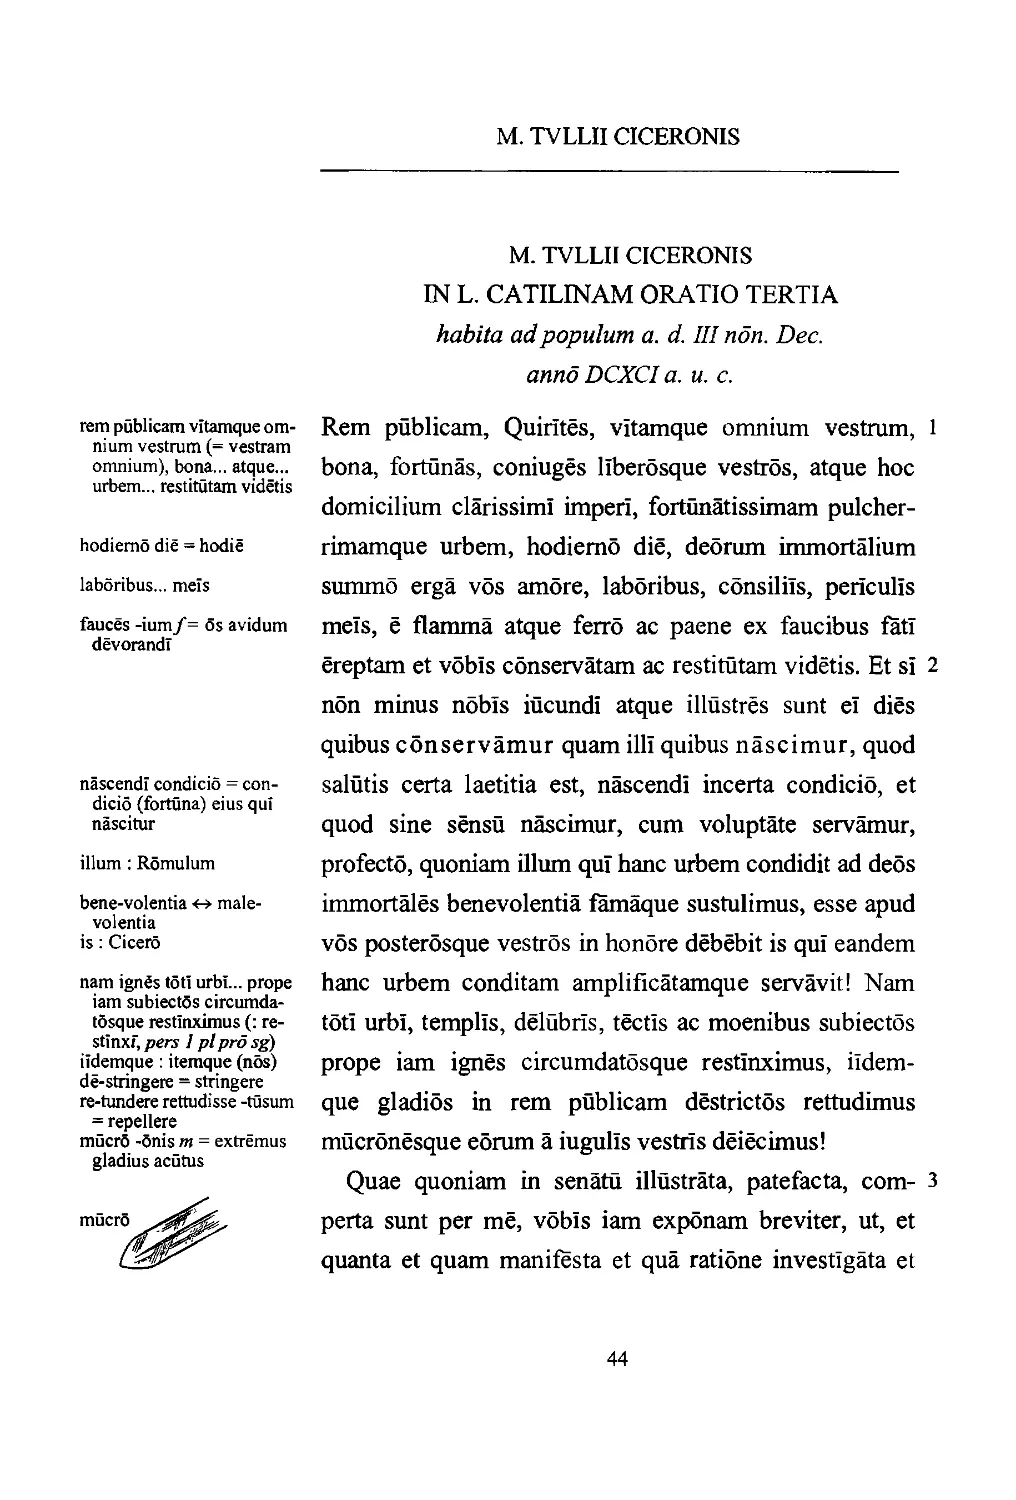 CICERONIS IN CATILINAM ORATIO III.1–17, 29